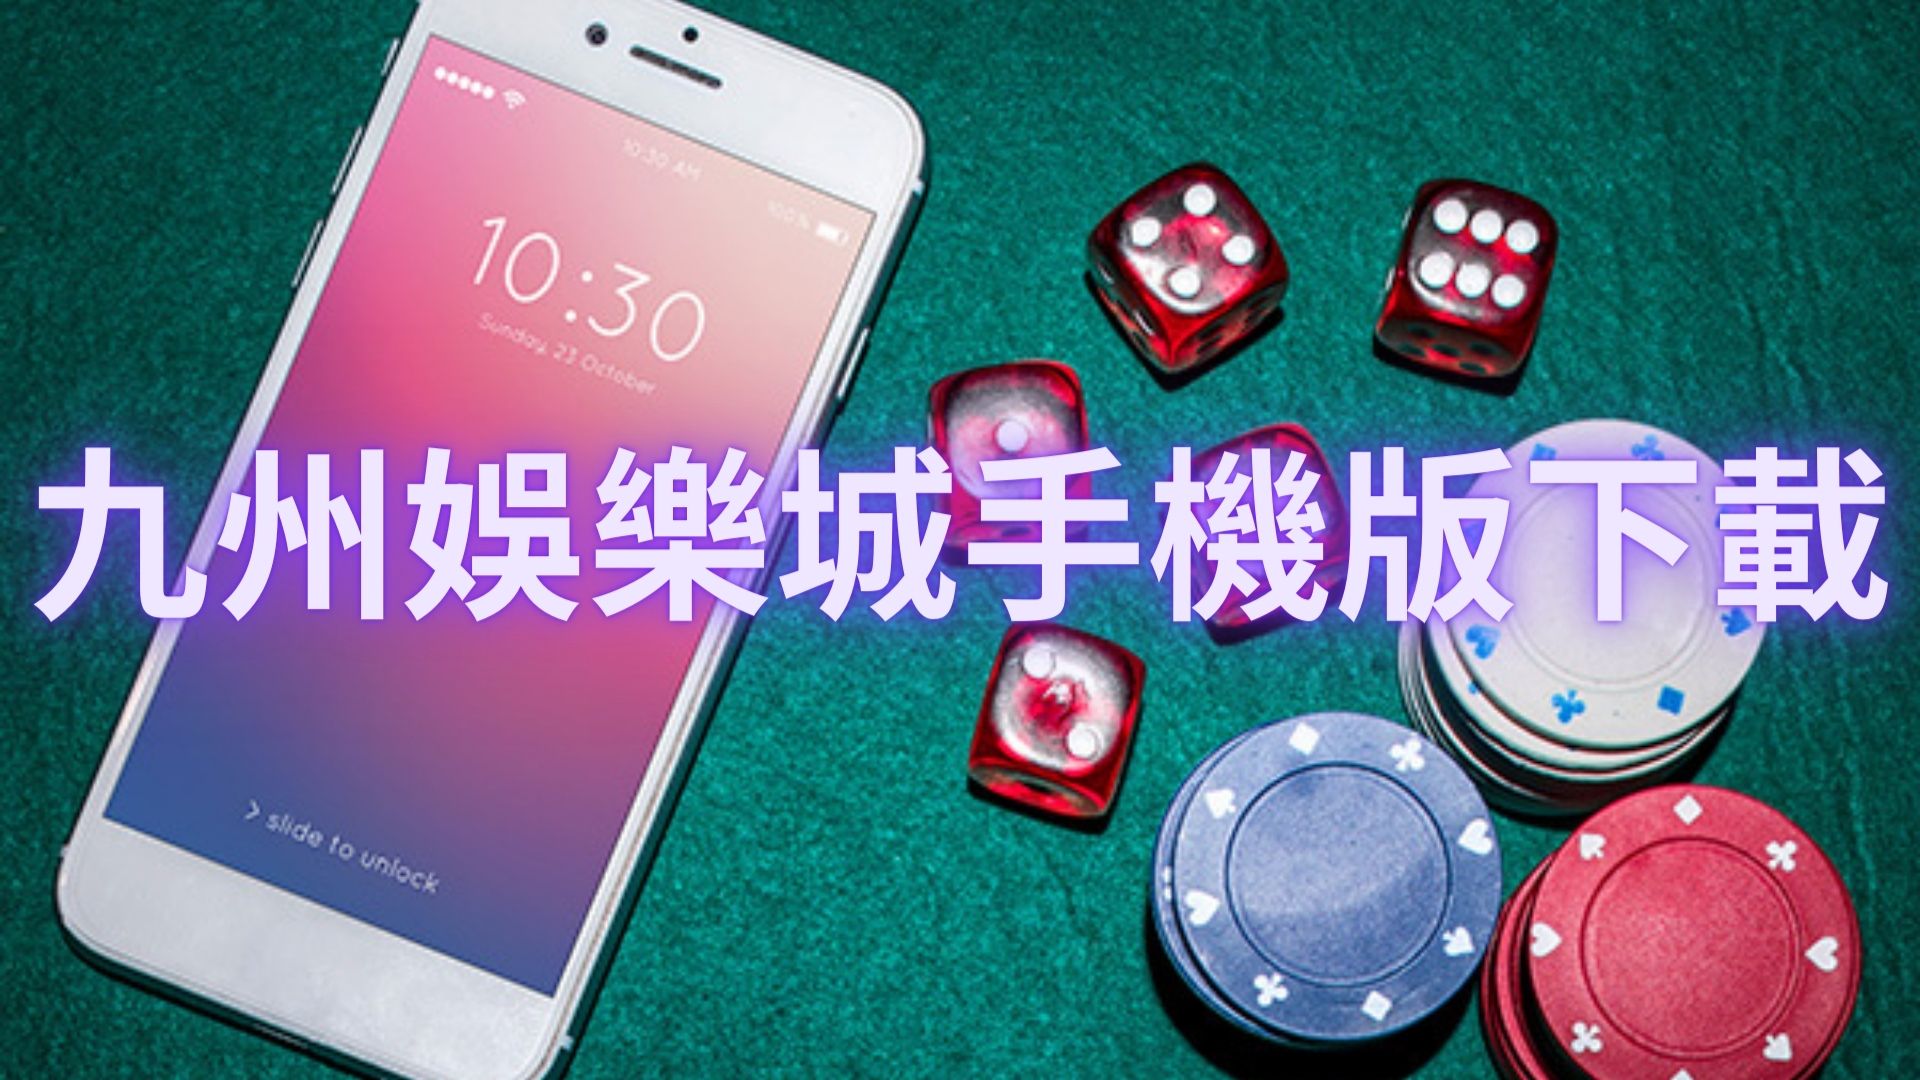 九州娛樂城手機版下載提高技能快速便利送高額禮金輕鬆遊玩